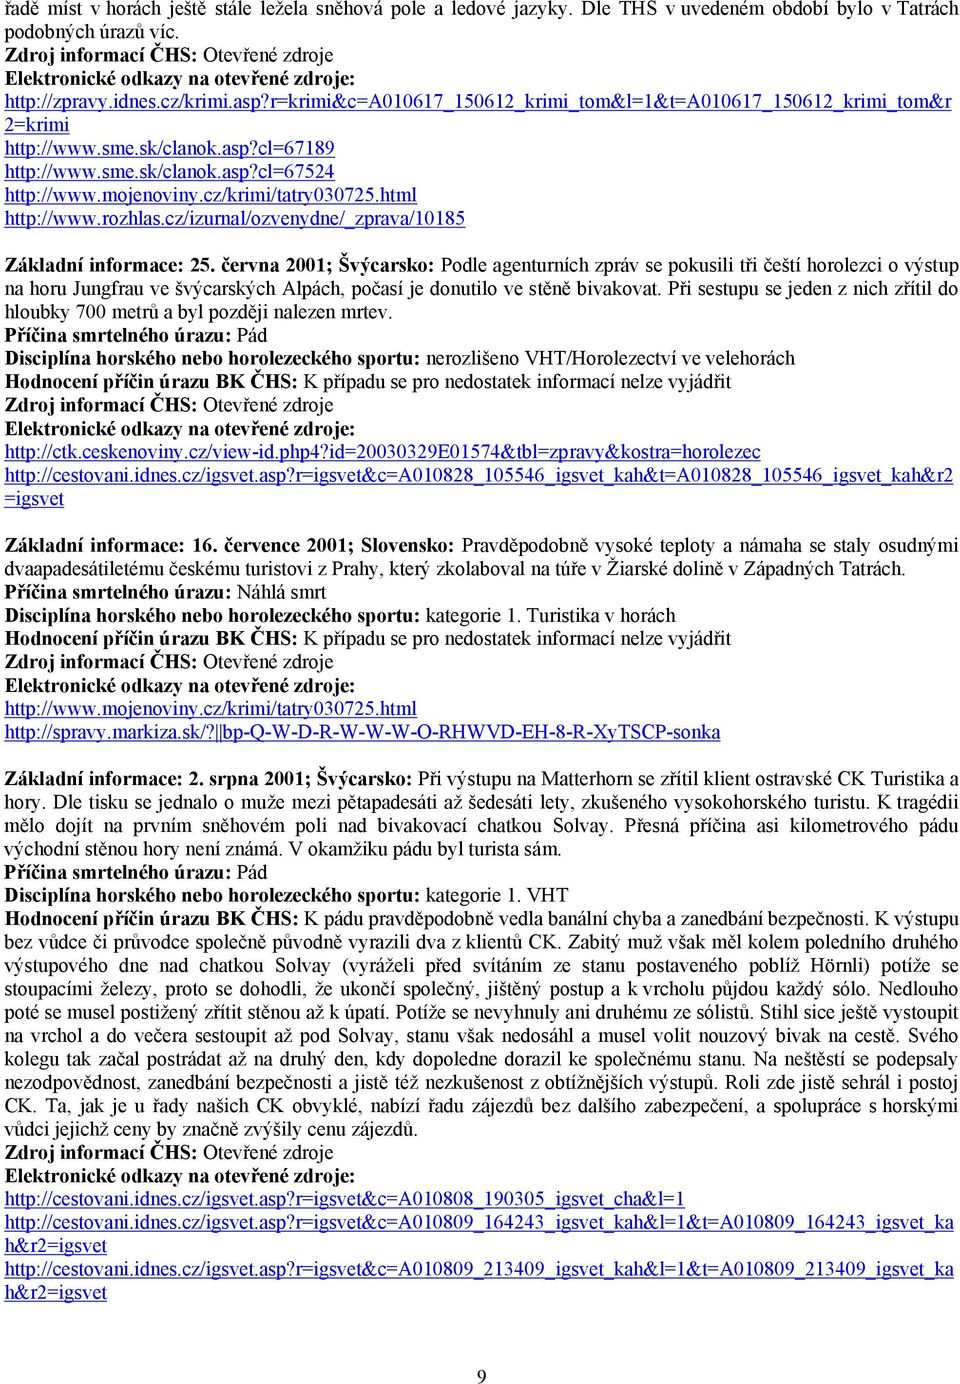 html http://www.rozhlas.cz/izurnal/ozvenydne/_zprava/10185 Základní informace: 25.